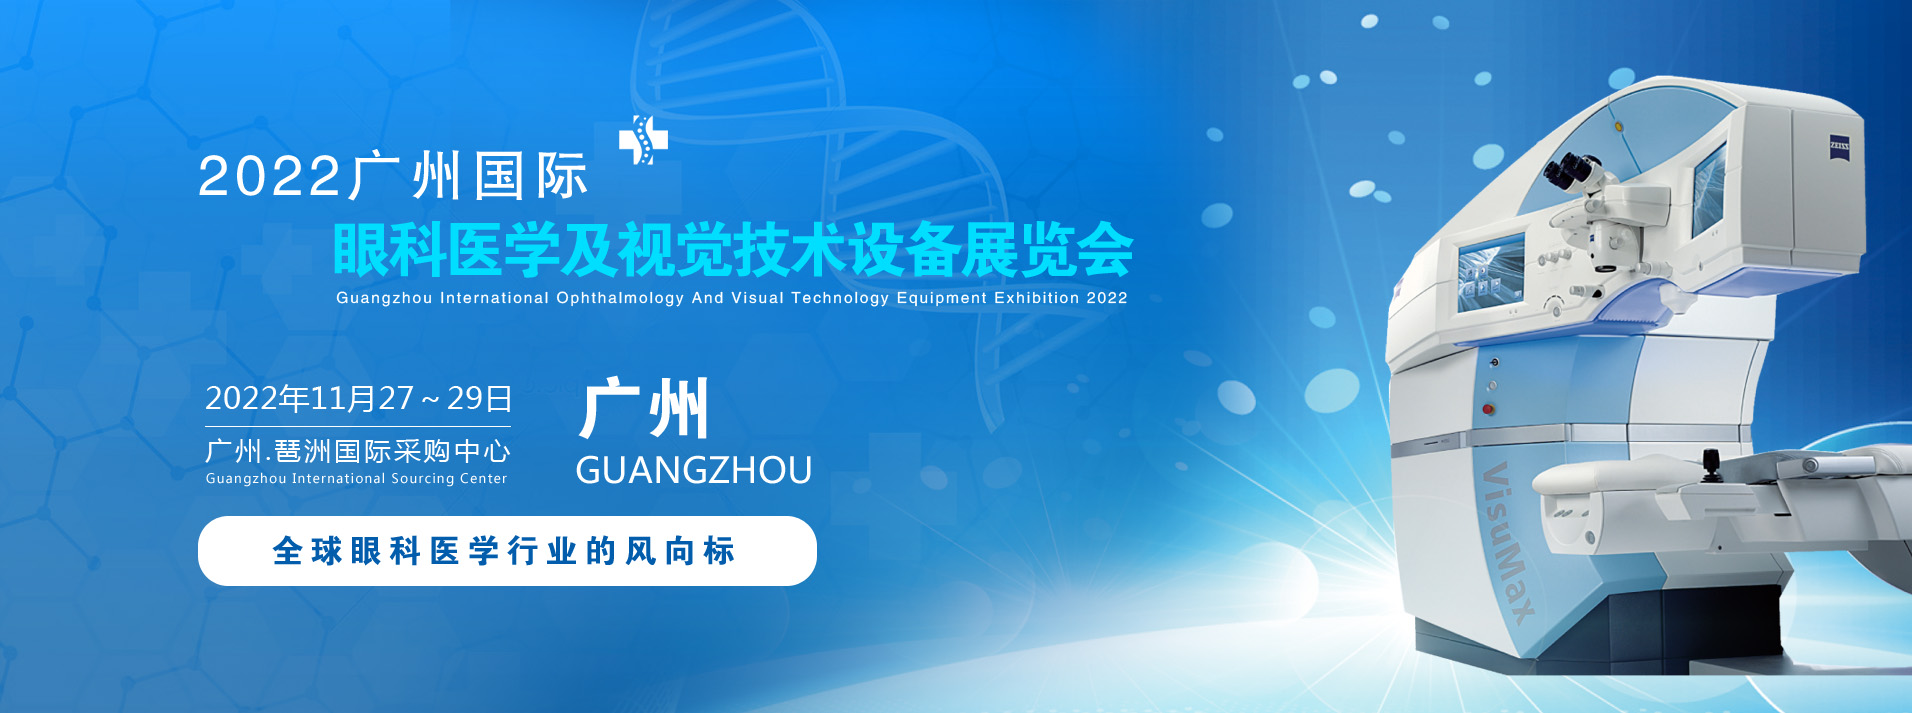 2022广州眼科医学及视觉技术展览会